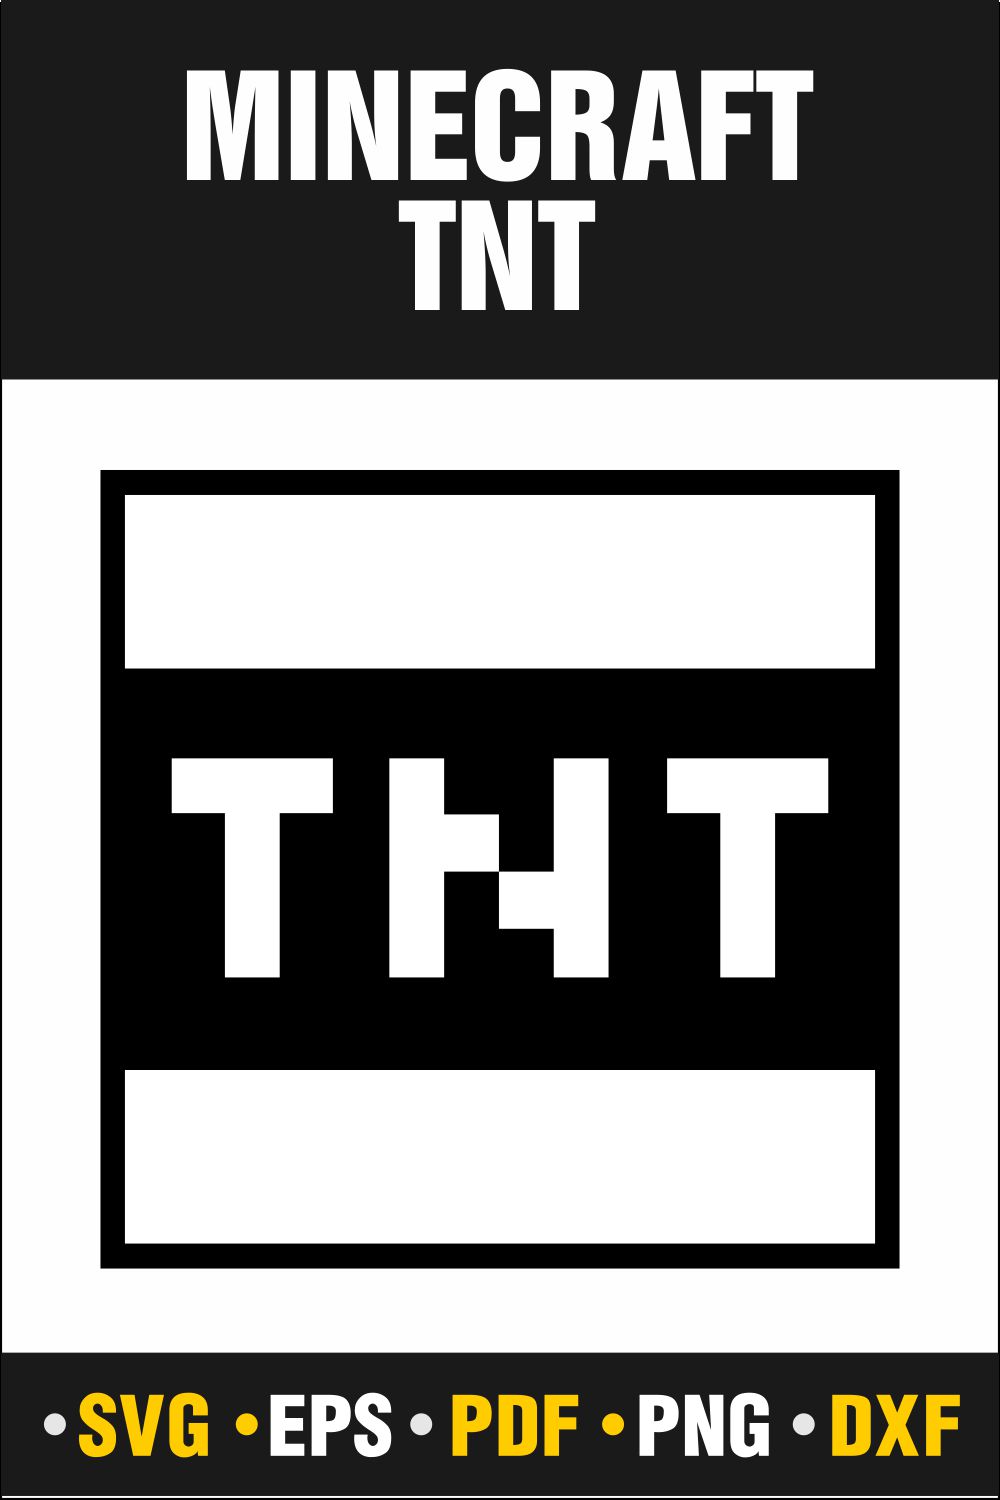 TNT, Mine craft TNT, Mine craft TNT Svg, Mine craft TNT Svg Vector Cut File Cricut, Silhouette, Pdf Png, Dxf, Decal, Sticker, Stencil, Vinyl pinterest preview image.